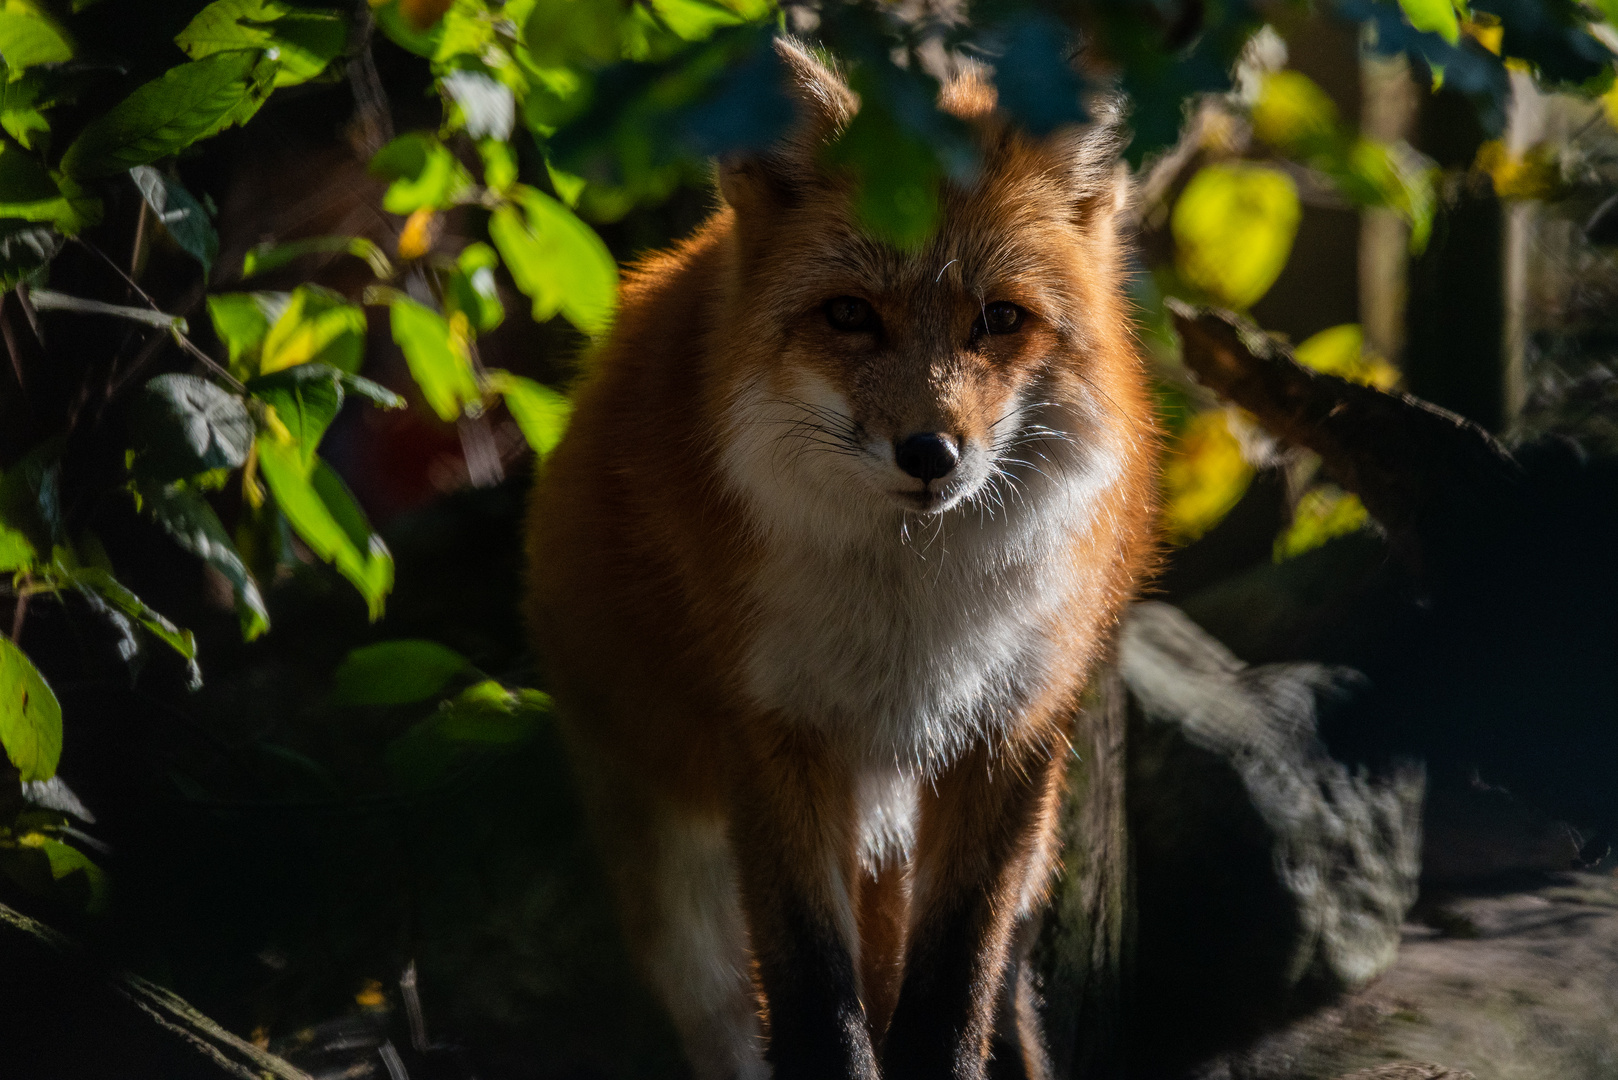 Fuchs beobachtet seine Umgebung